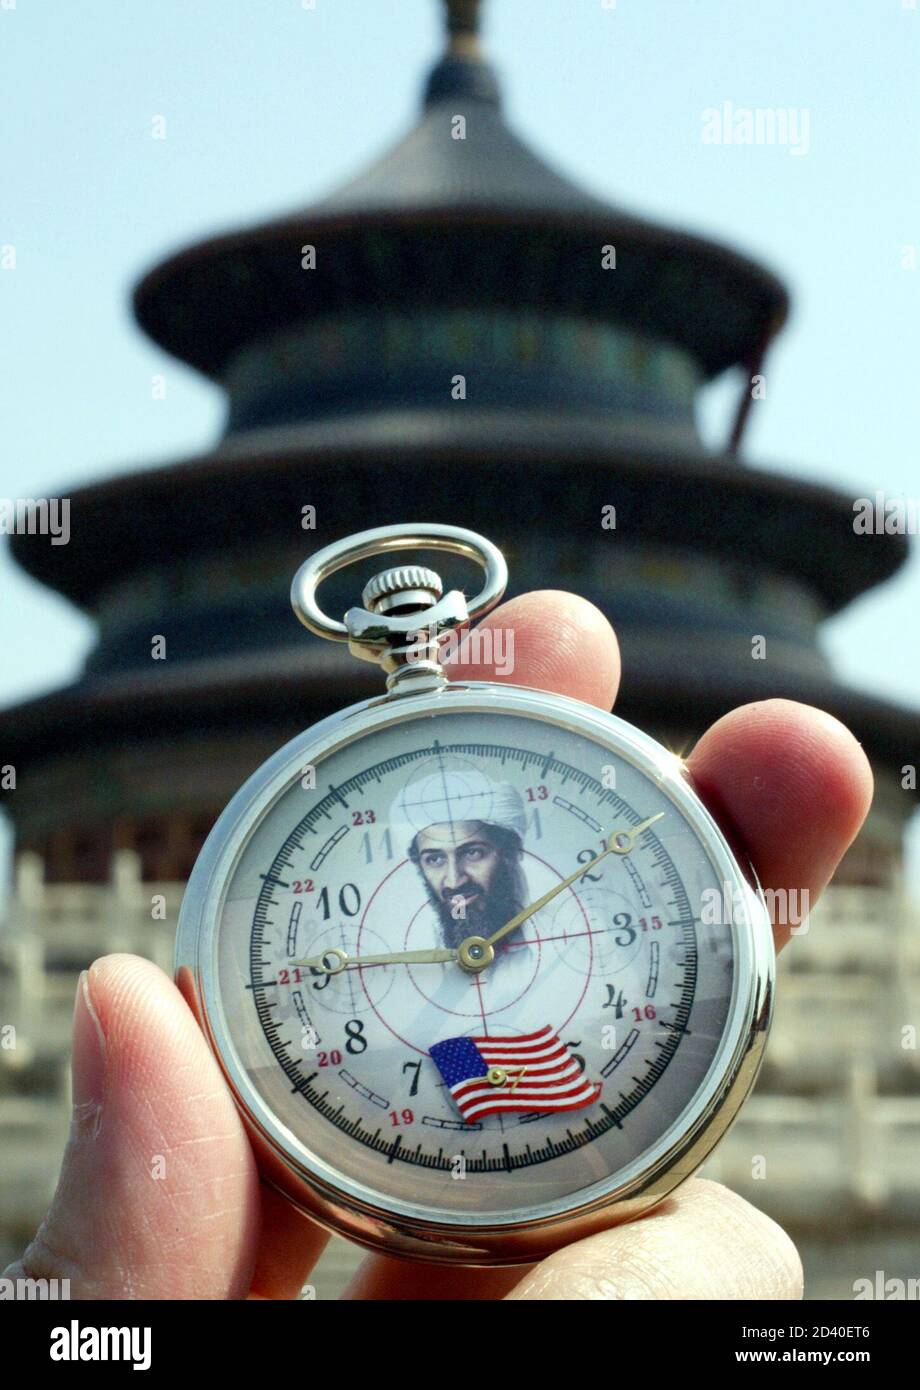 Un orologio tascabile di produzione russa con Osama bin Laden e una  bandiera americana è esposto di fronte al Tempio del Paradiso a Pechino il  9 settembre 2002. L'orologio da tasca vendeva